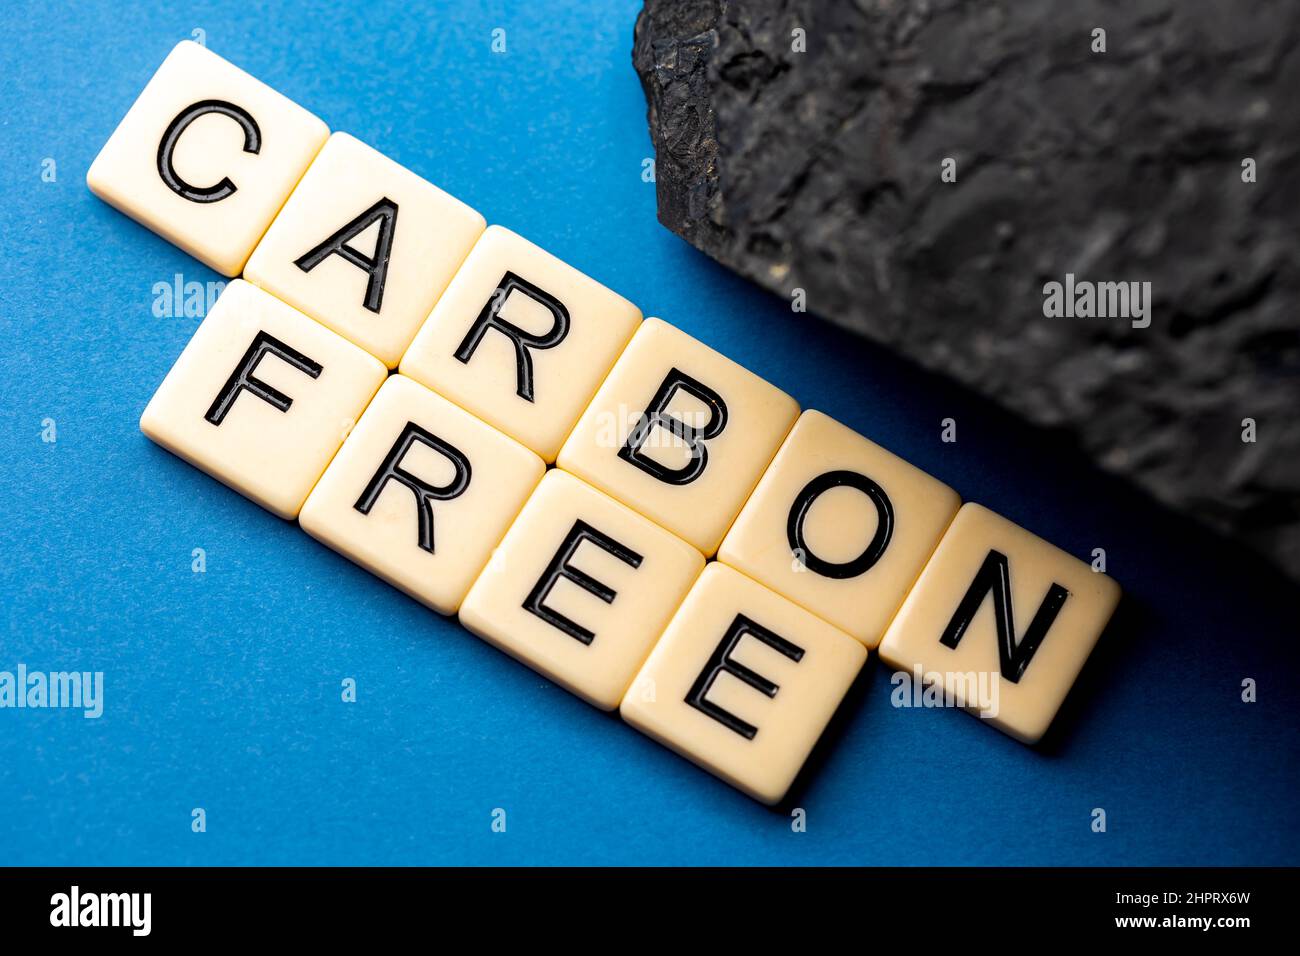 Un morceau de charbon disposé sur fond bleu avec la phrase "sans carbone" composée de lettres. Photo prise sous une lumière artificielle douce Banque D'Images